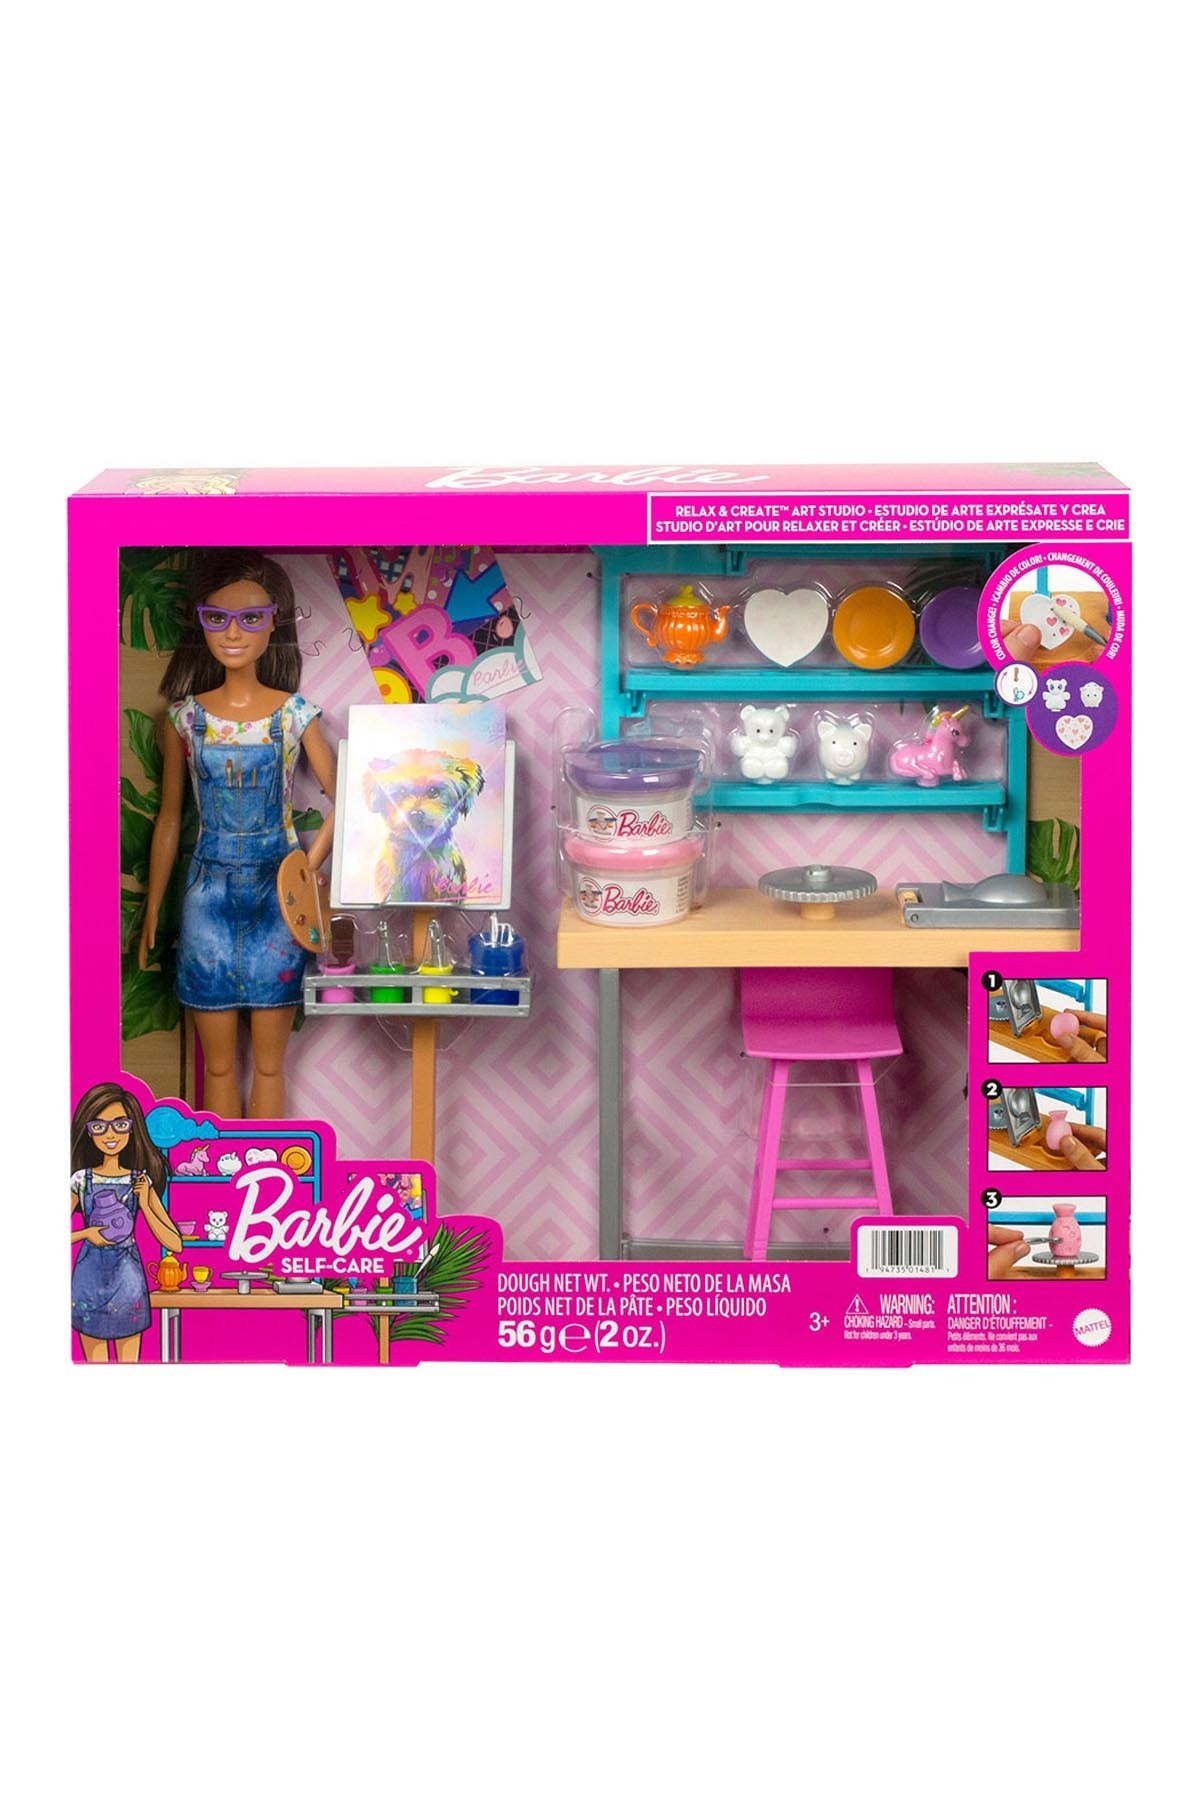 Barbie'nin Sanat Atölyesi Oyun Seti